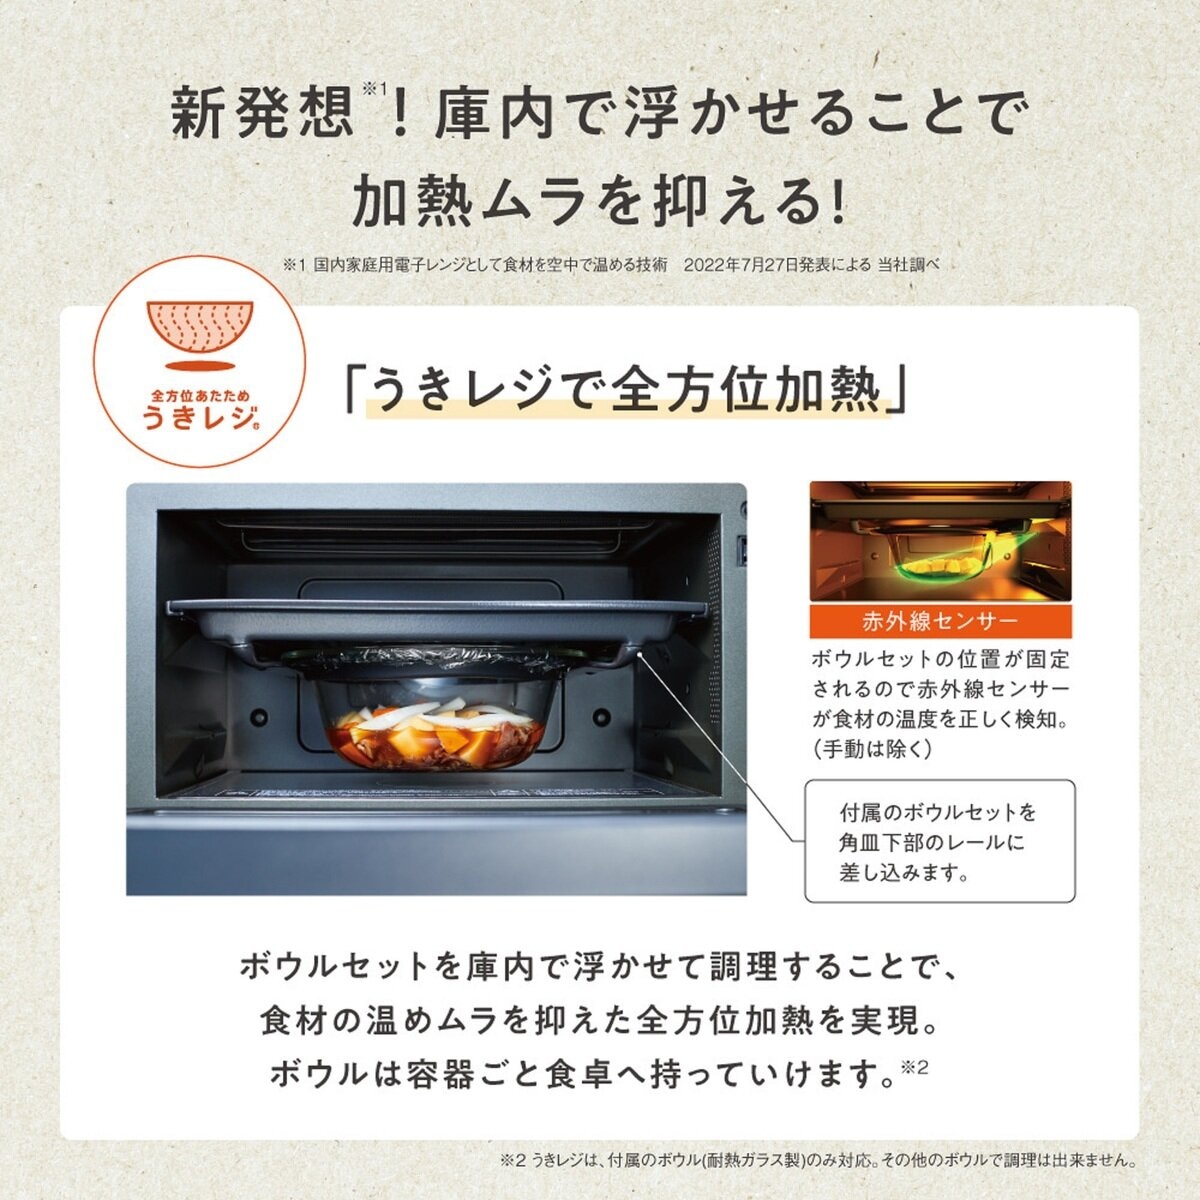 象印 オーブンレンジ EVERINO(エブリノ) 26L ES-GT26-WA | Costco Japan